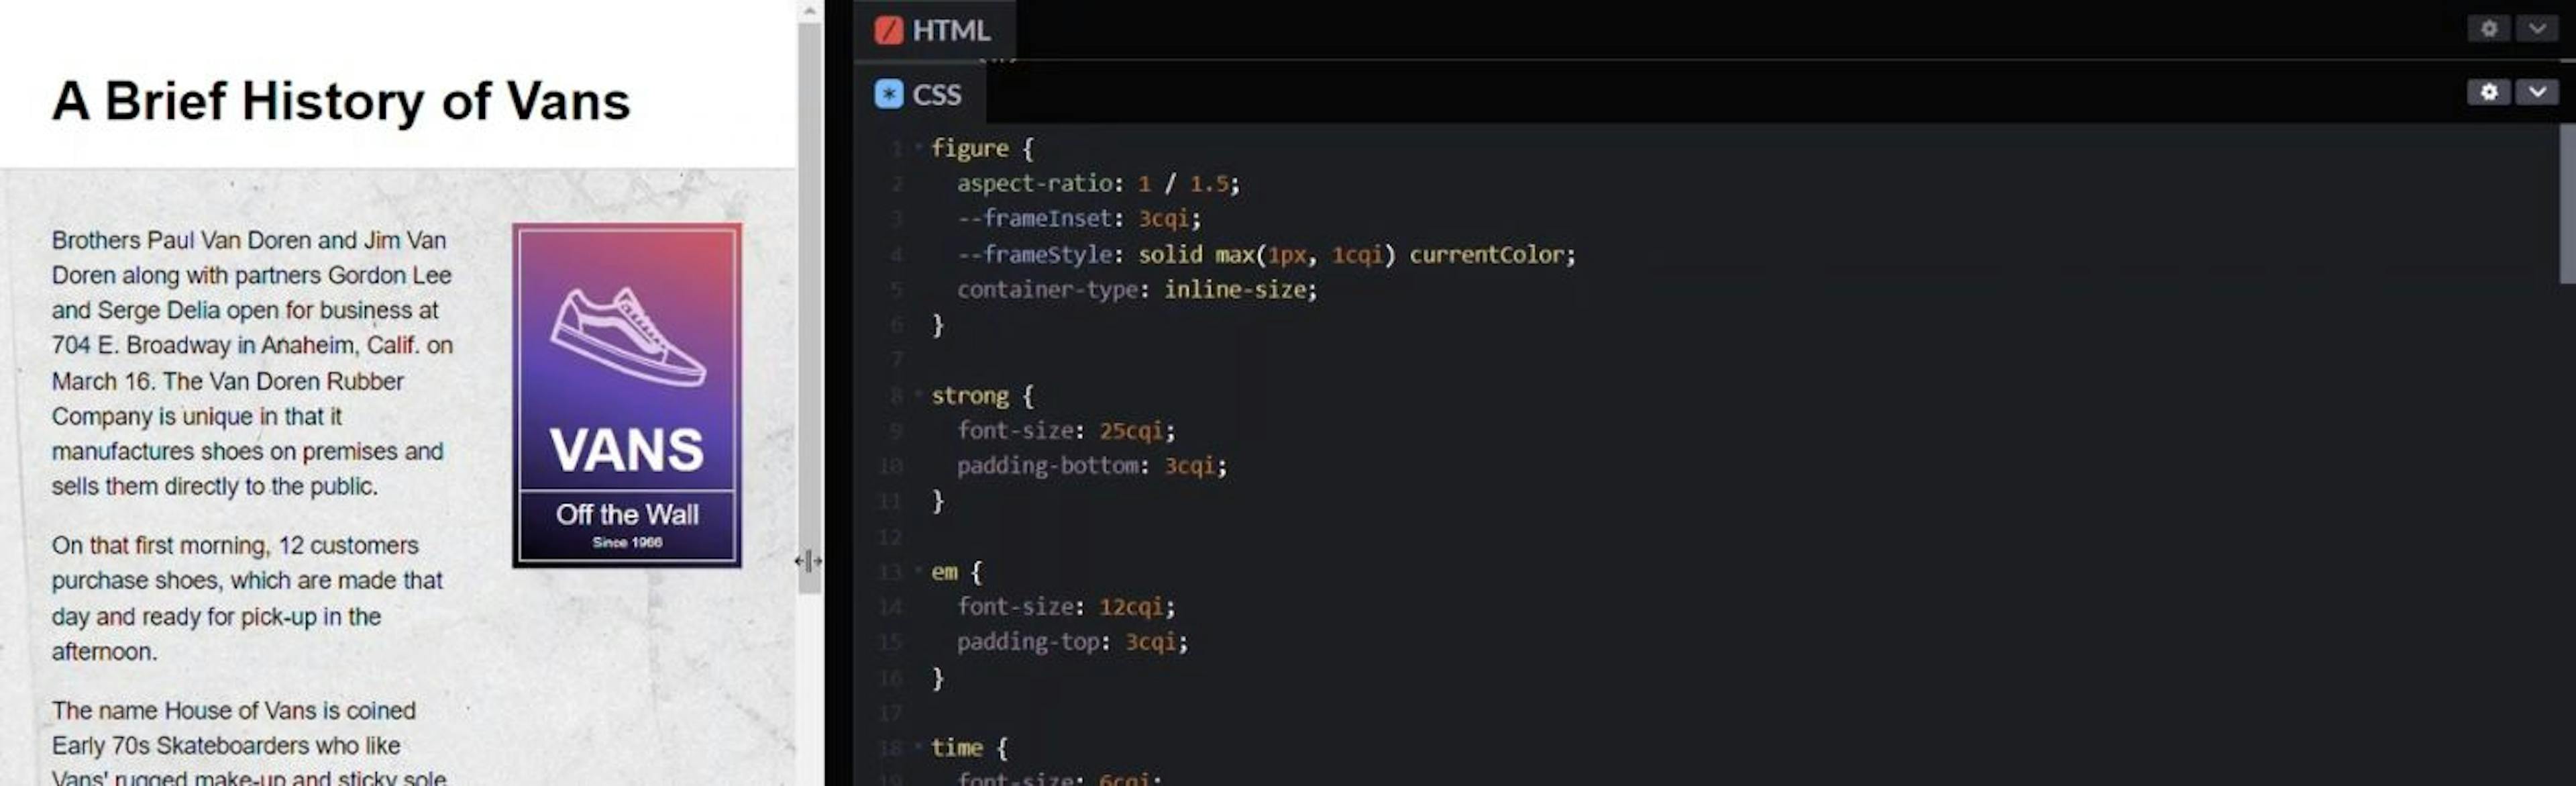 Anuncio como consultas de contenedor HTML y CSS en ventanas gráficas más pequeñas